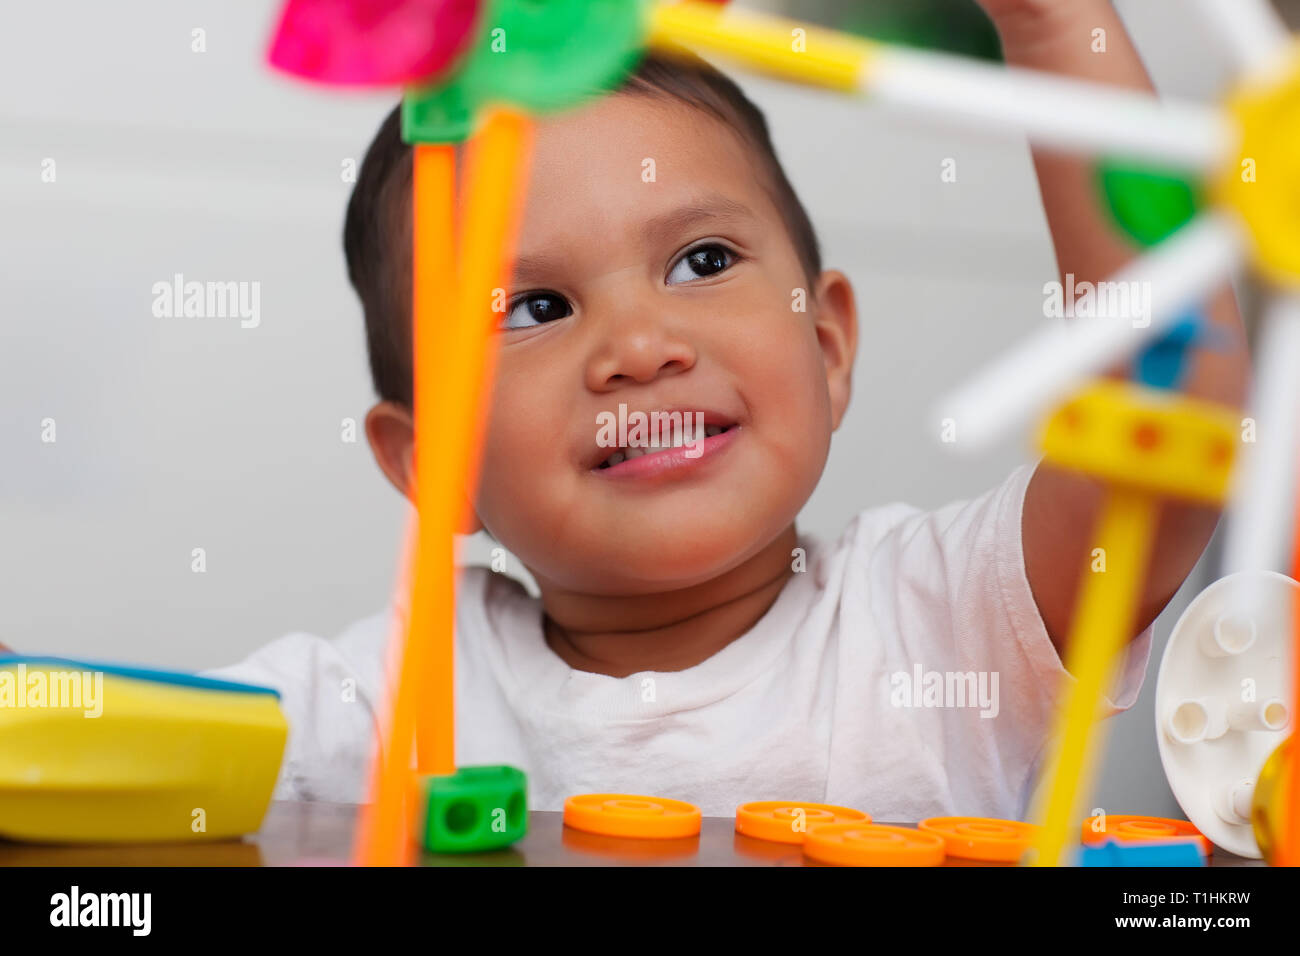 Un chico lindo jugar con juguetes manipulativos matemáticas preescolar y con una expresión facial que muestra preguntarse o pensar. Foto de stock